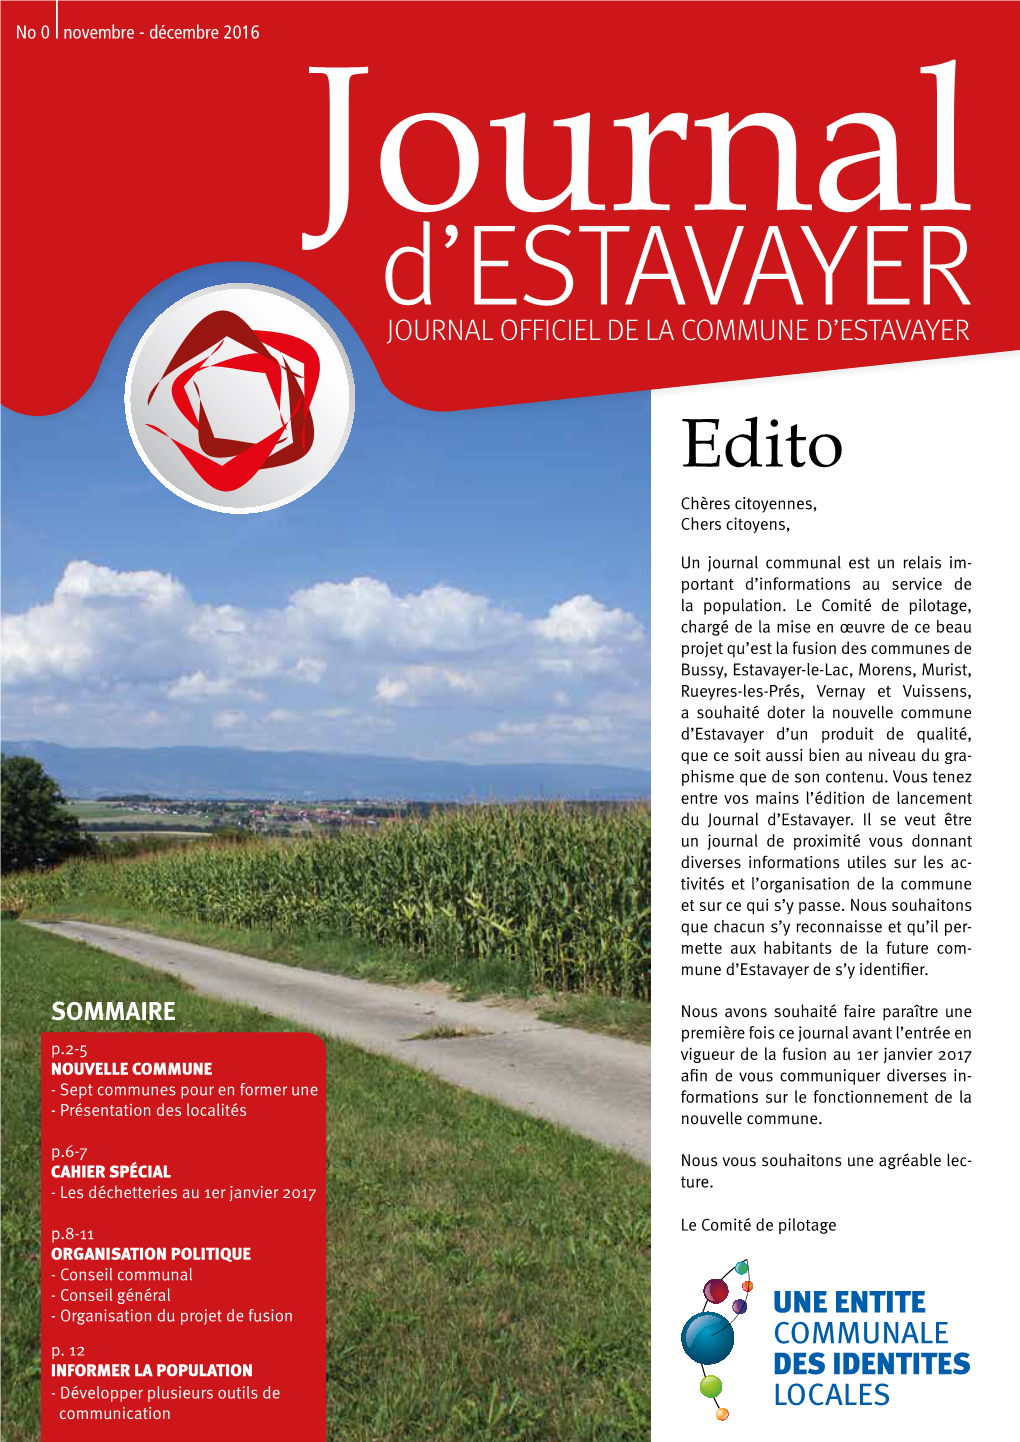 Journal D ’ESTAVAYER JOURNAL OFFICIEL DE LA COMMUNE D’ESTAVAYER